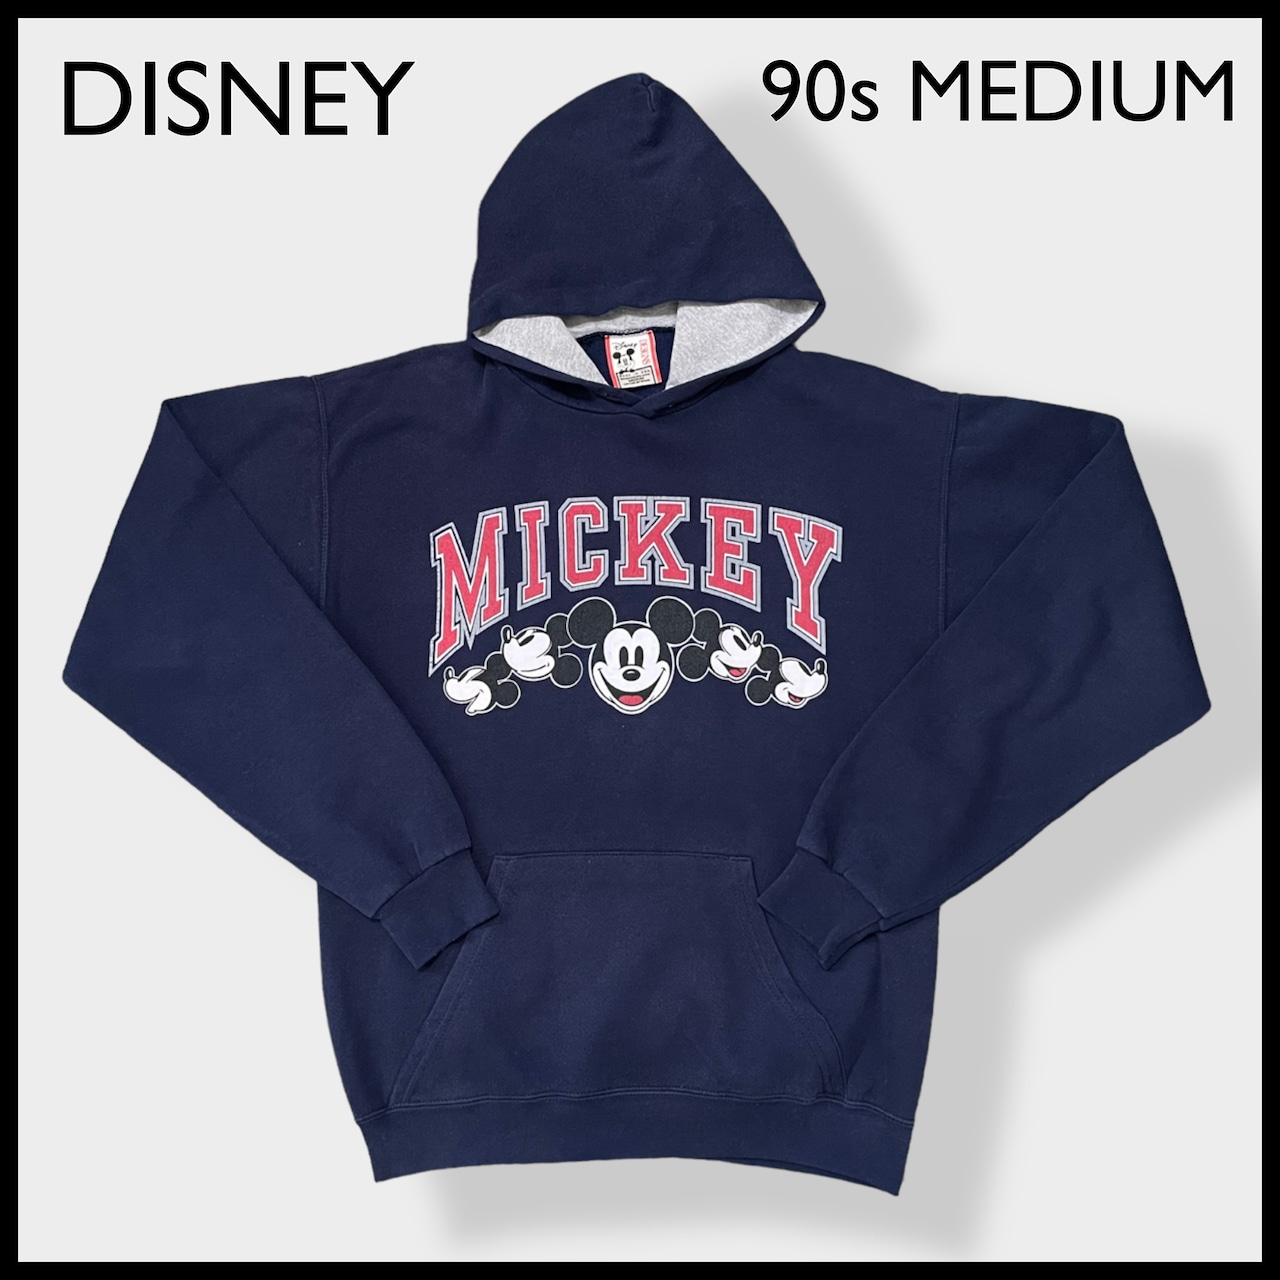 【Disney】90s USA製 ミッキーマウス MICKEY アーチロゴ プリント スウェット パーカー プルオーバー フーディ MEDIUM US古着